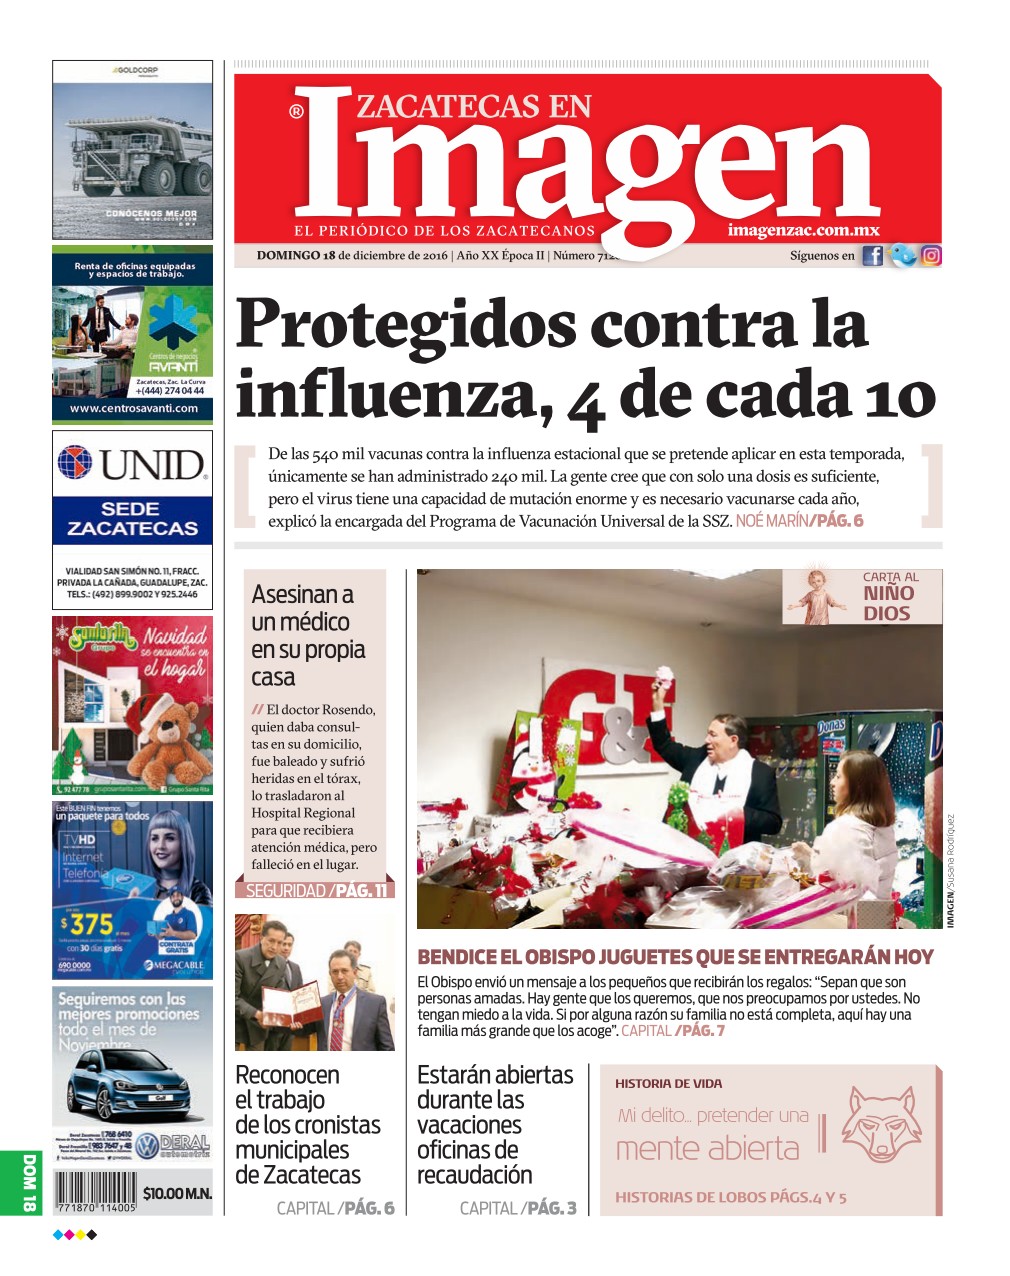 Imagen Zacatecas edición del 18 de Diciembre 2016